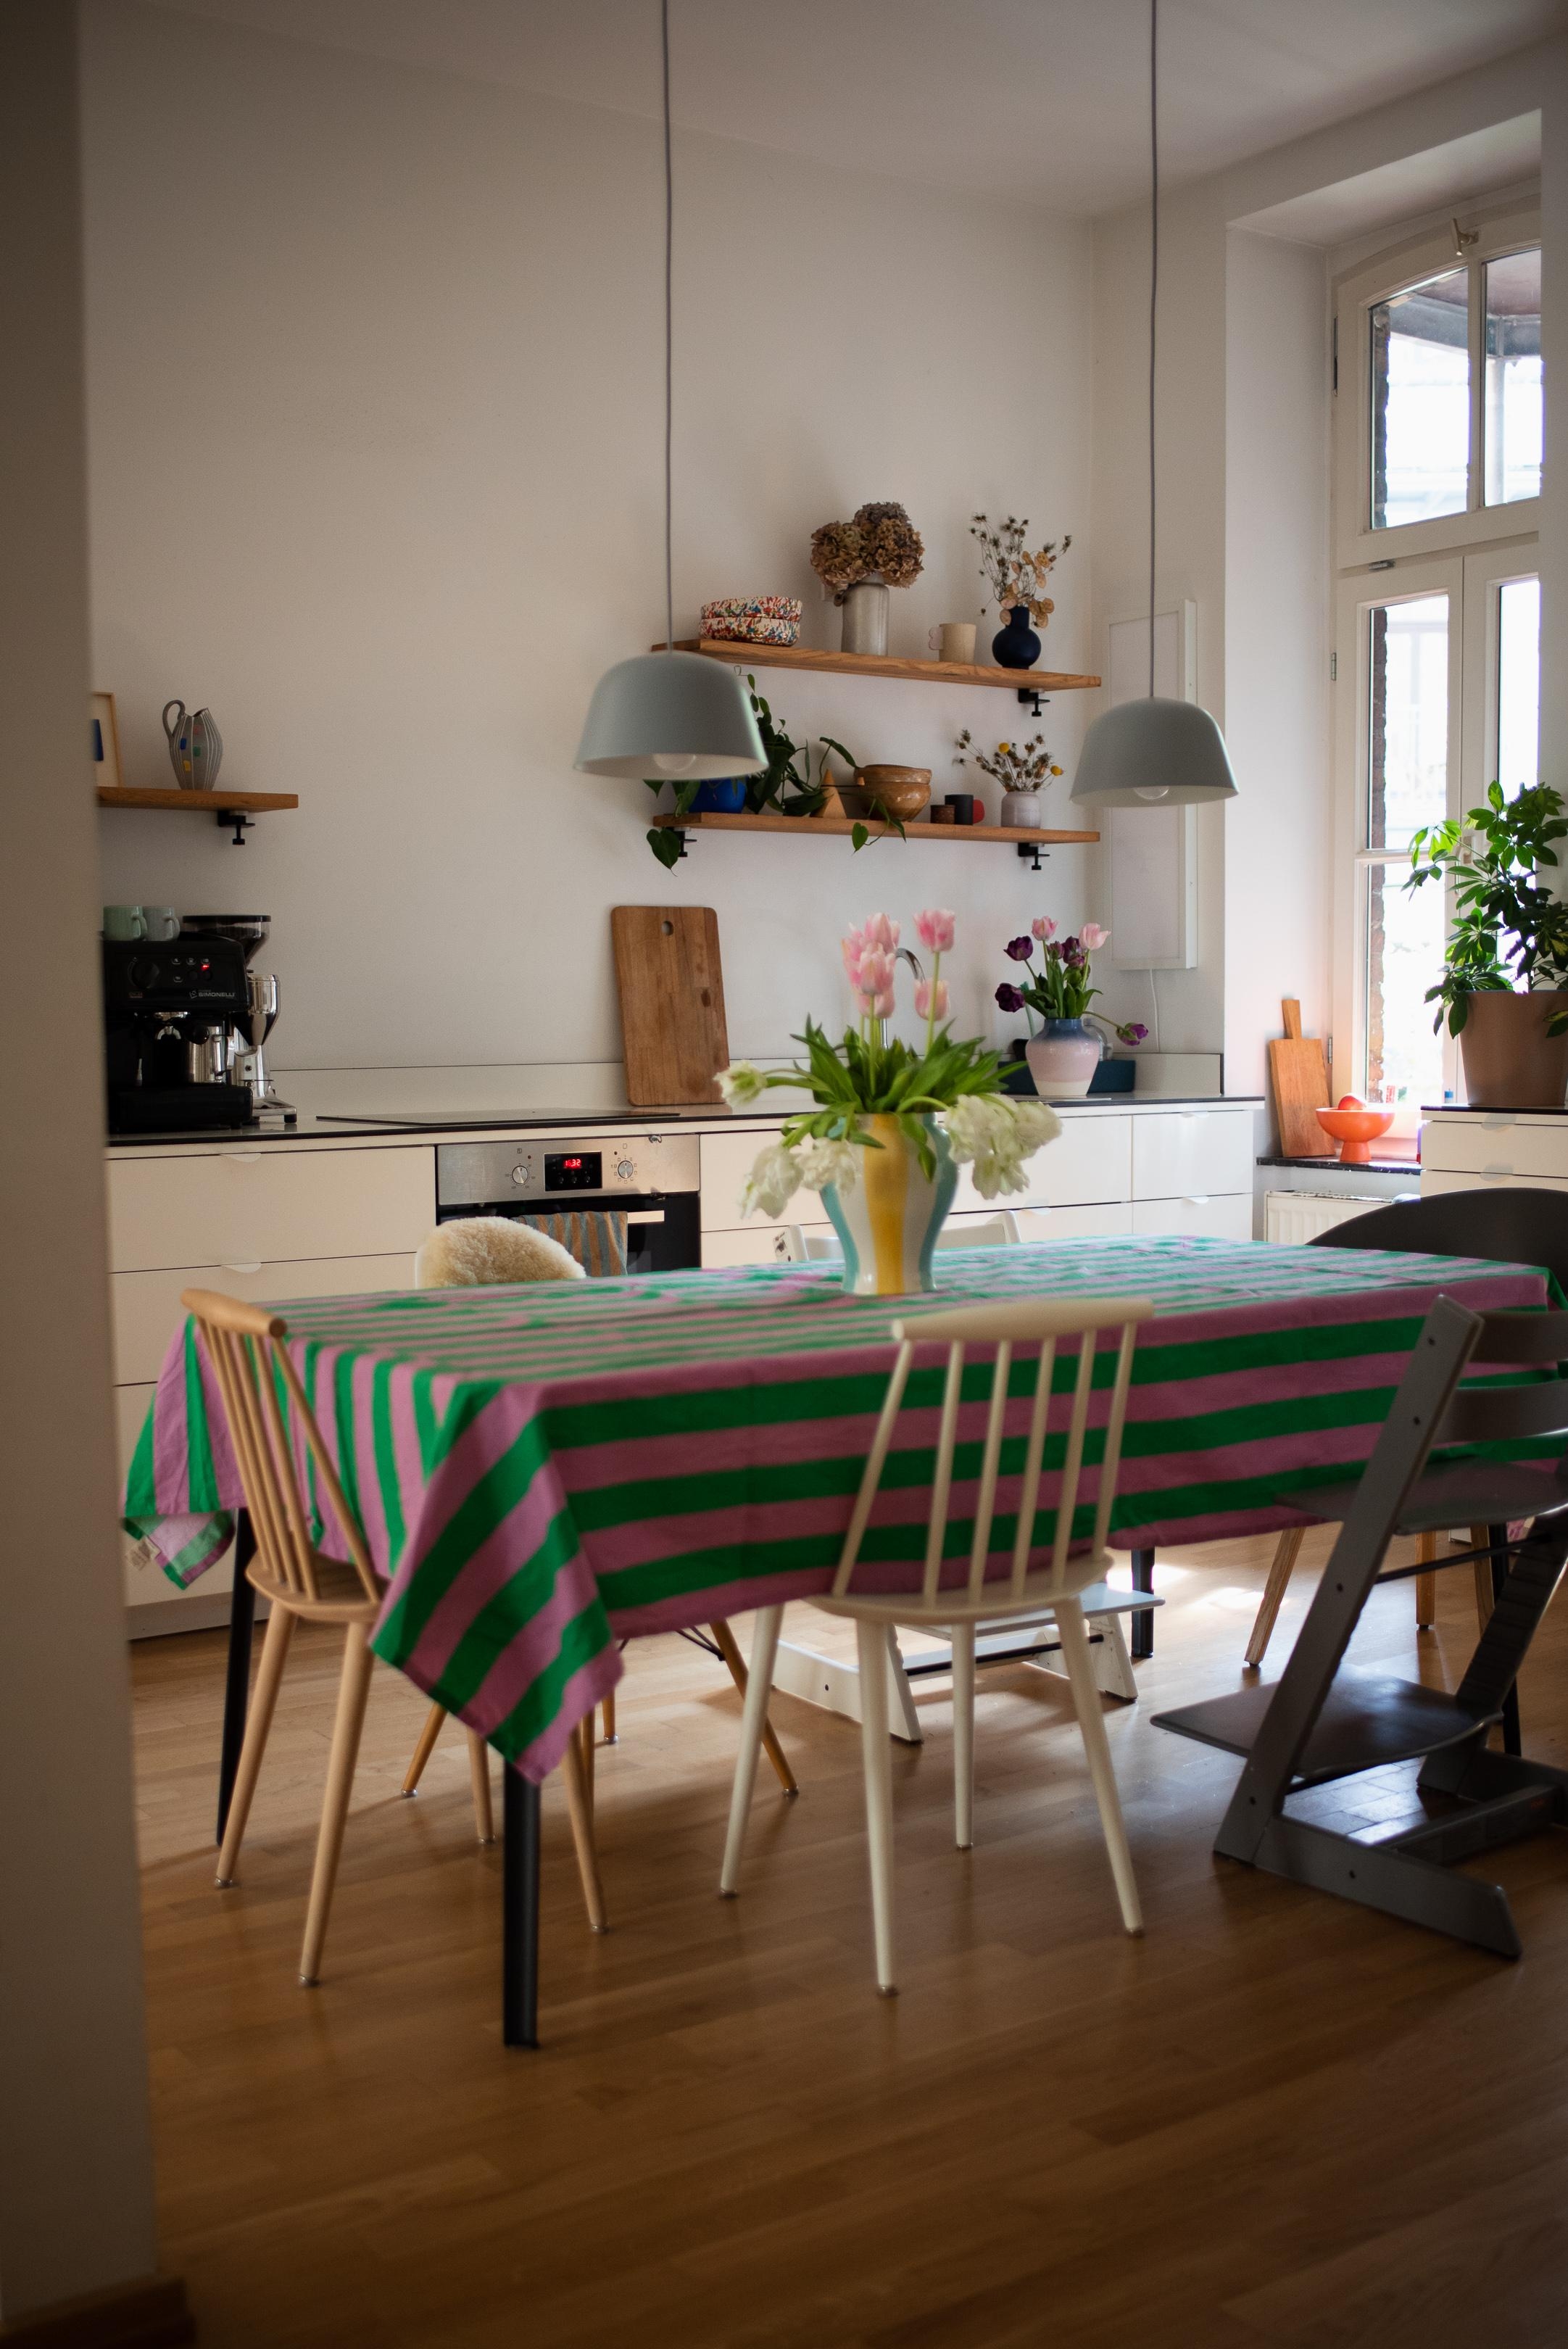 Kommt gut ins Wochenende #küche #wohnküche #tuplen #stripes #tischdecke #kitchenideas